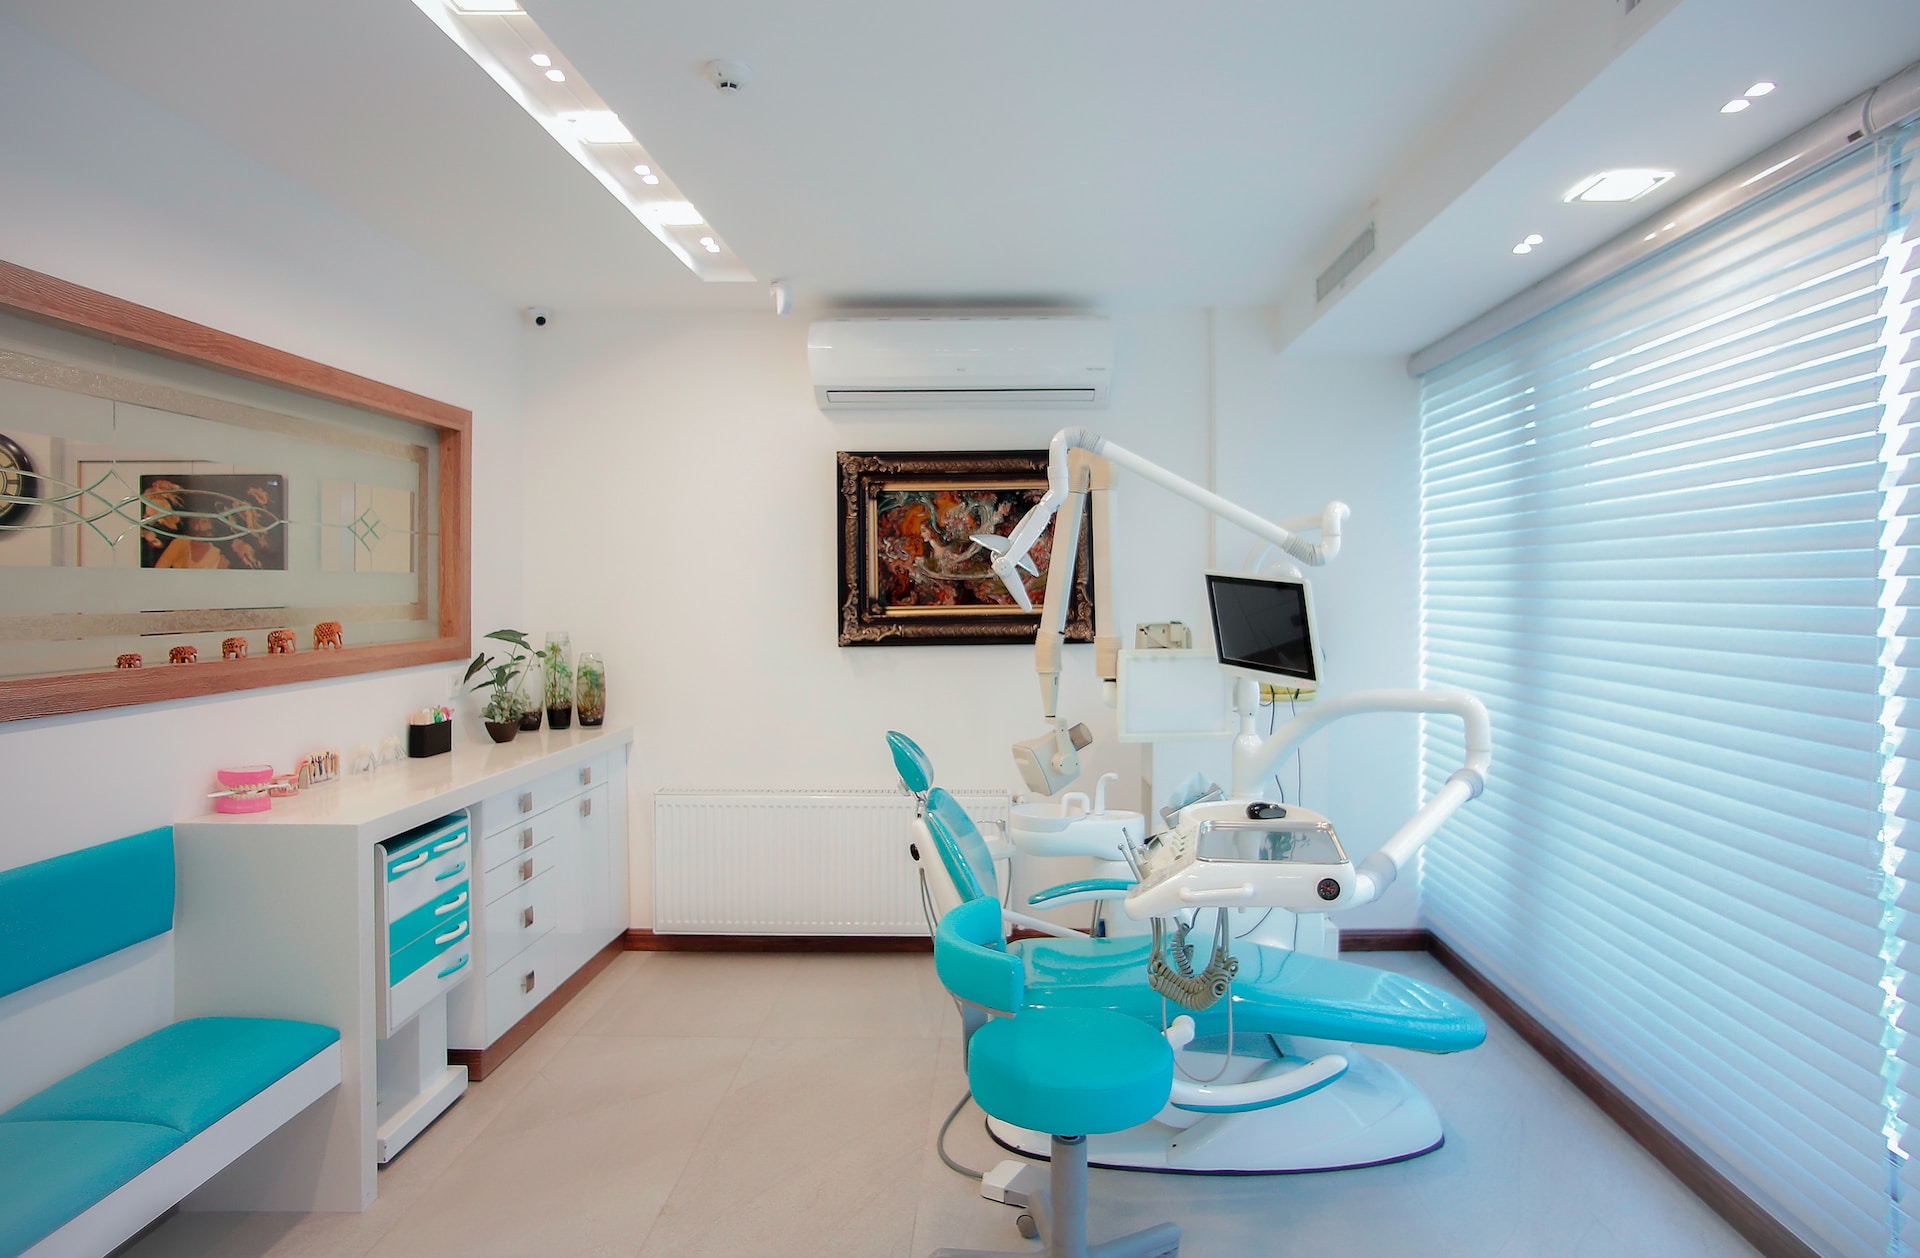 Kontrola stomatologiczna: Co musisz wiedzieć?